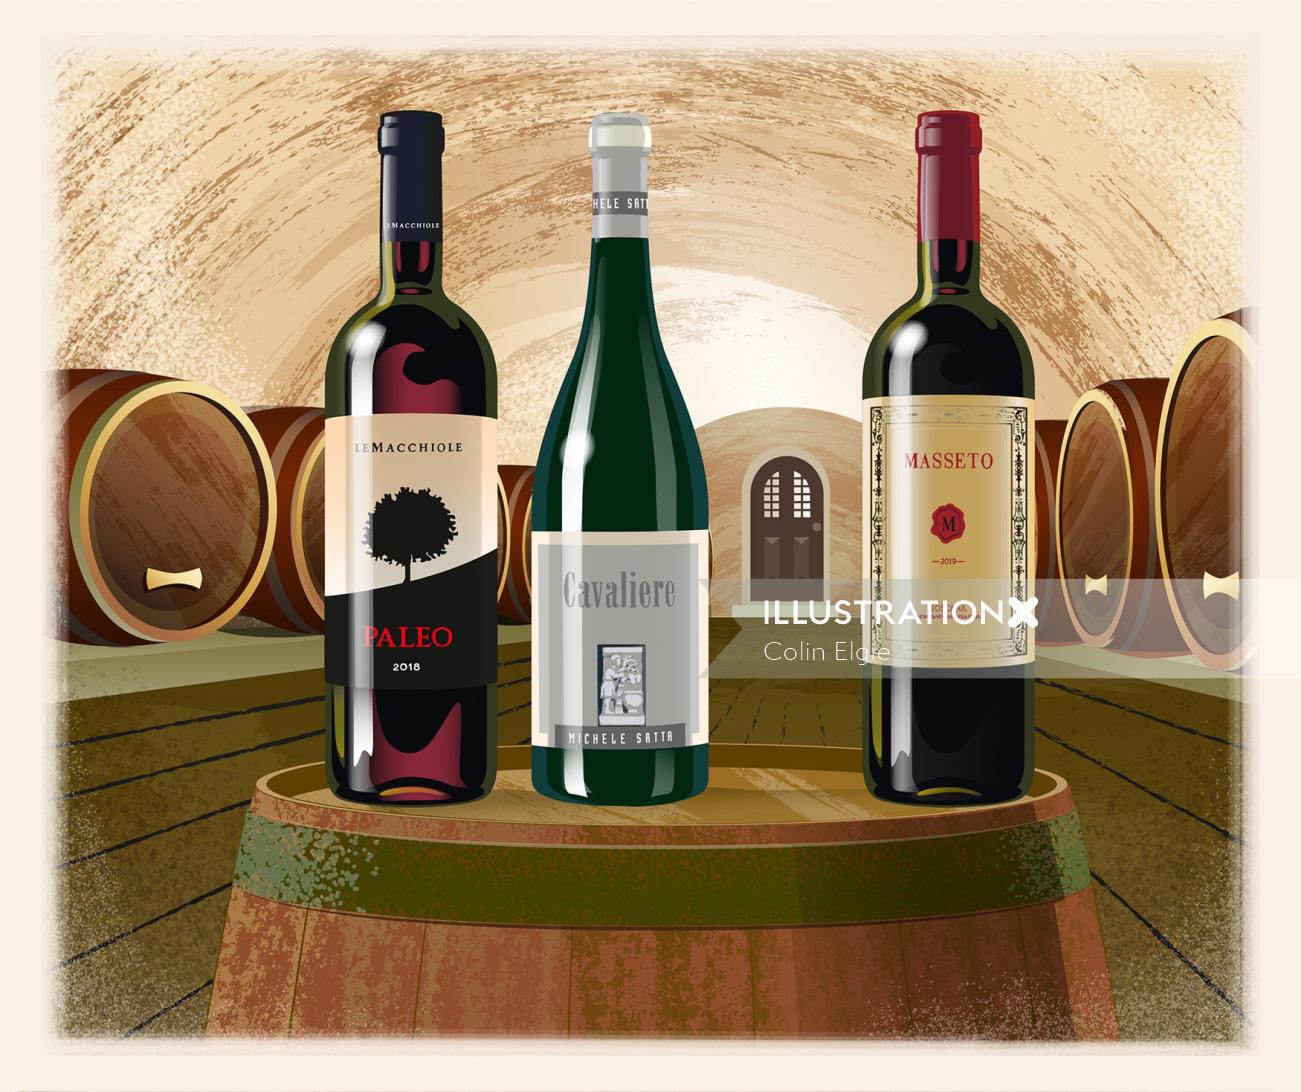 Bottles of wine on an oak barrel in a wine cellar.